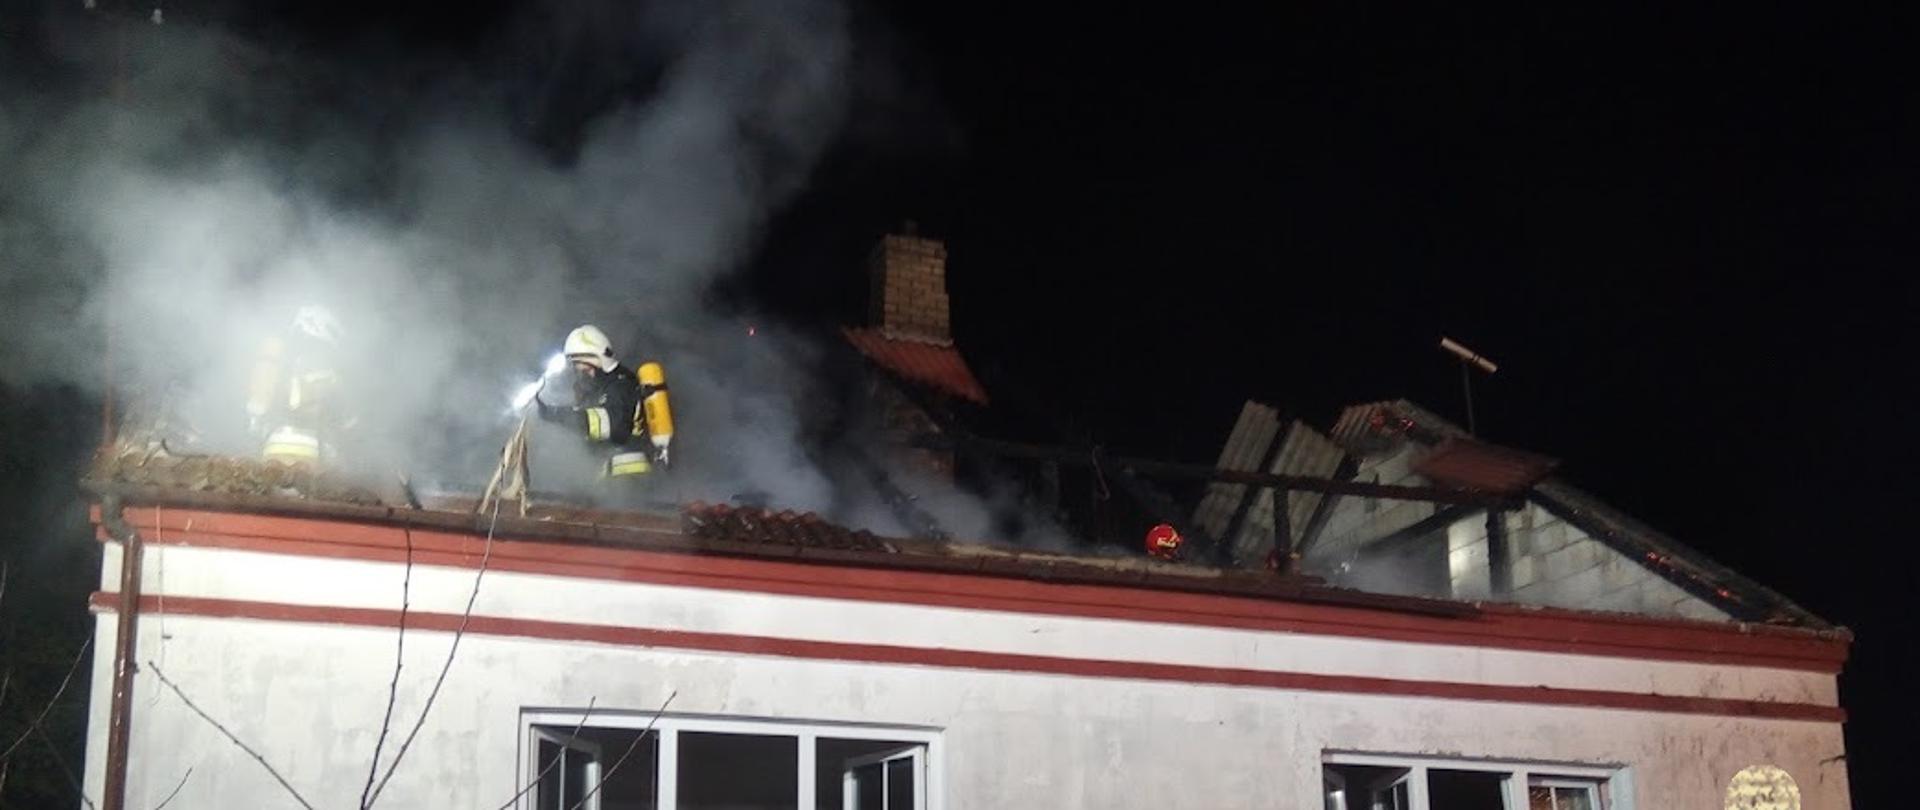 Budynek mieszkalny po pożarze. Pokrycie dachu uległo zniszczeniu. Nad budynkiem widoczny dym. Na dachu pracujący strażak. Wyposażony jest w aparat ochrony układu oddechowego.